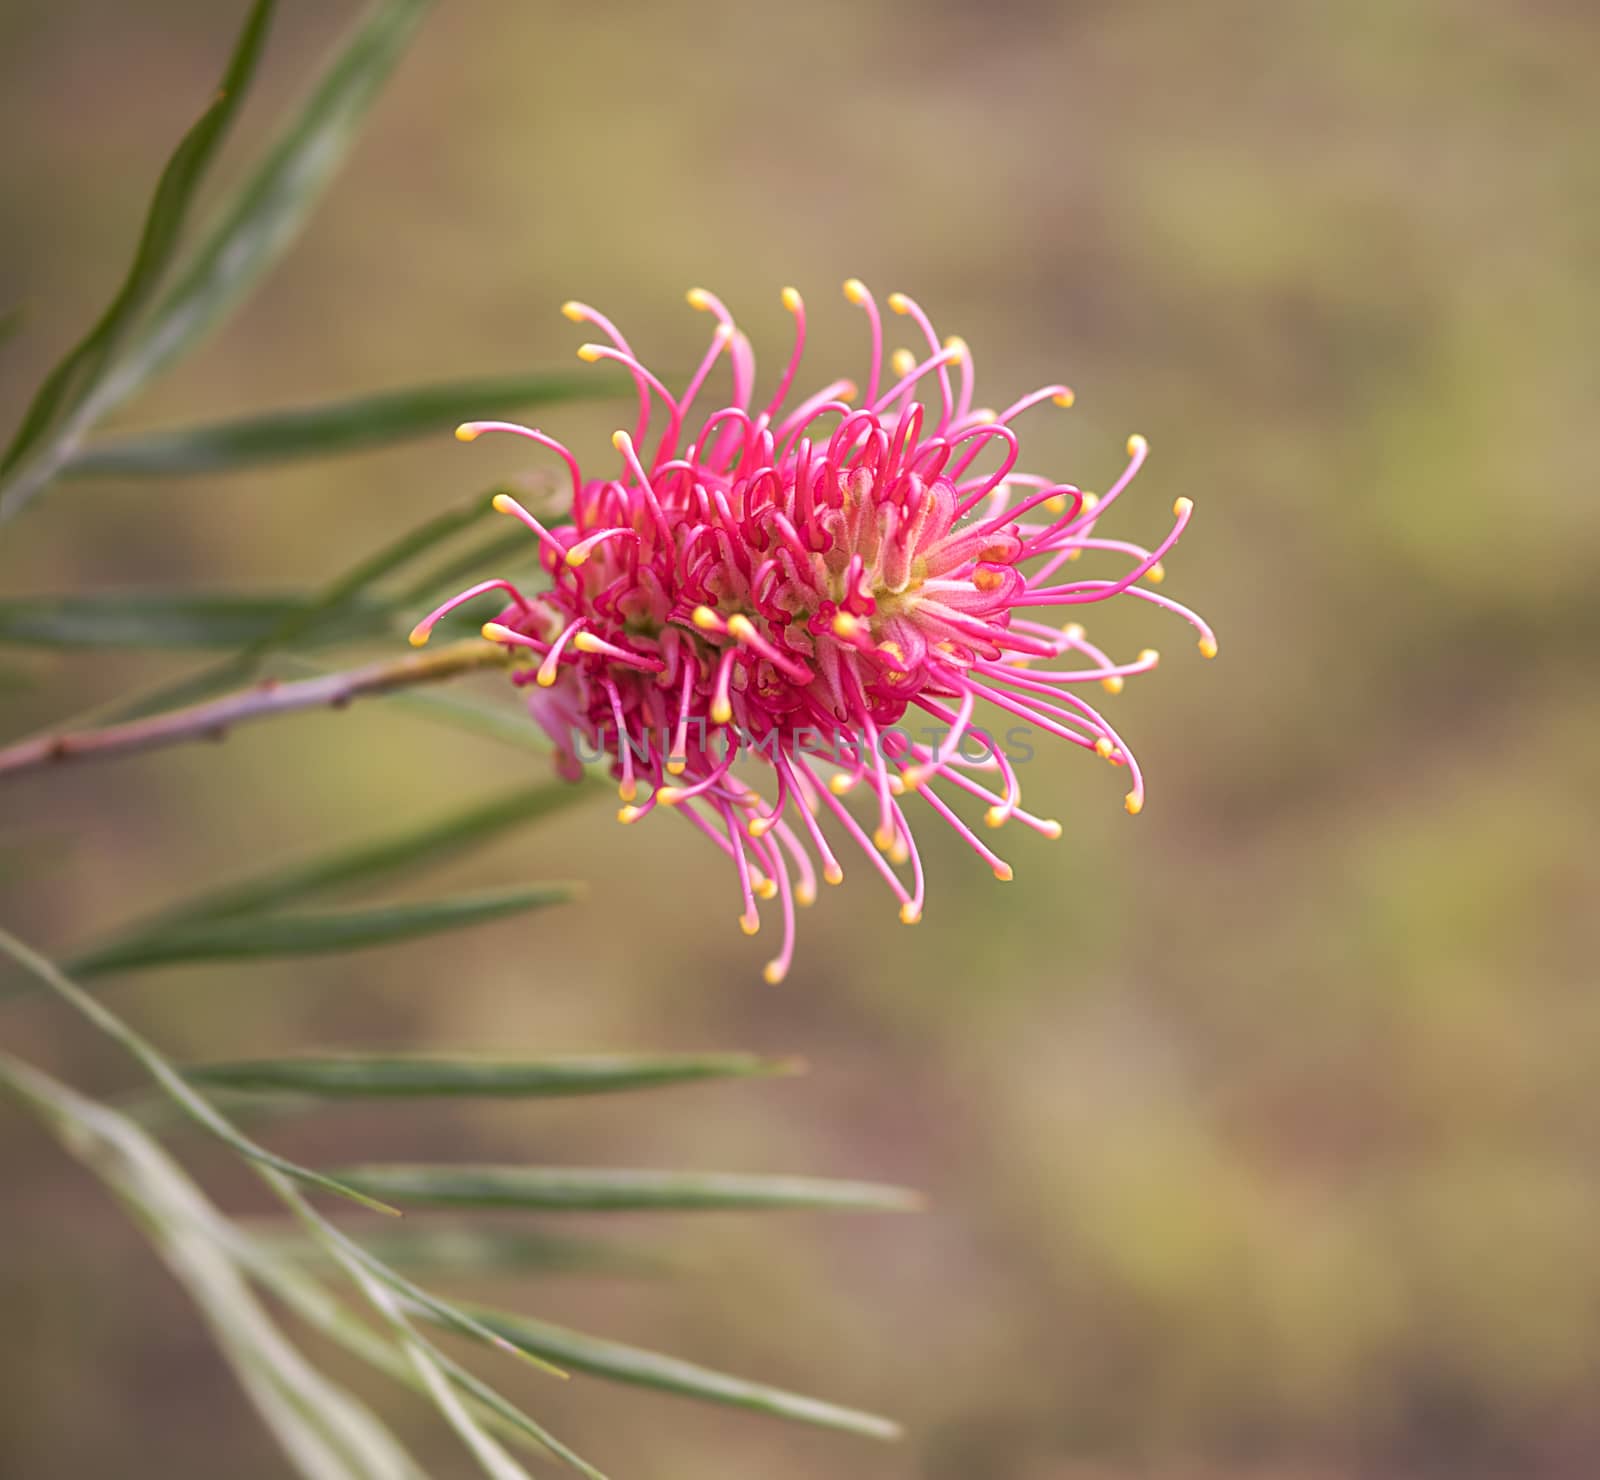  An Australian Wildflower Grevillea  by sherj